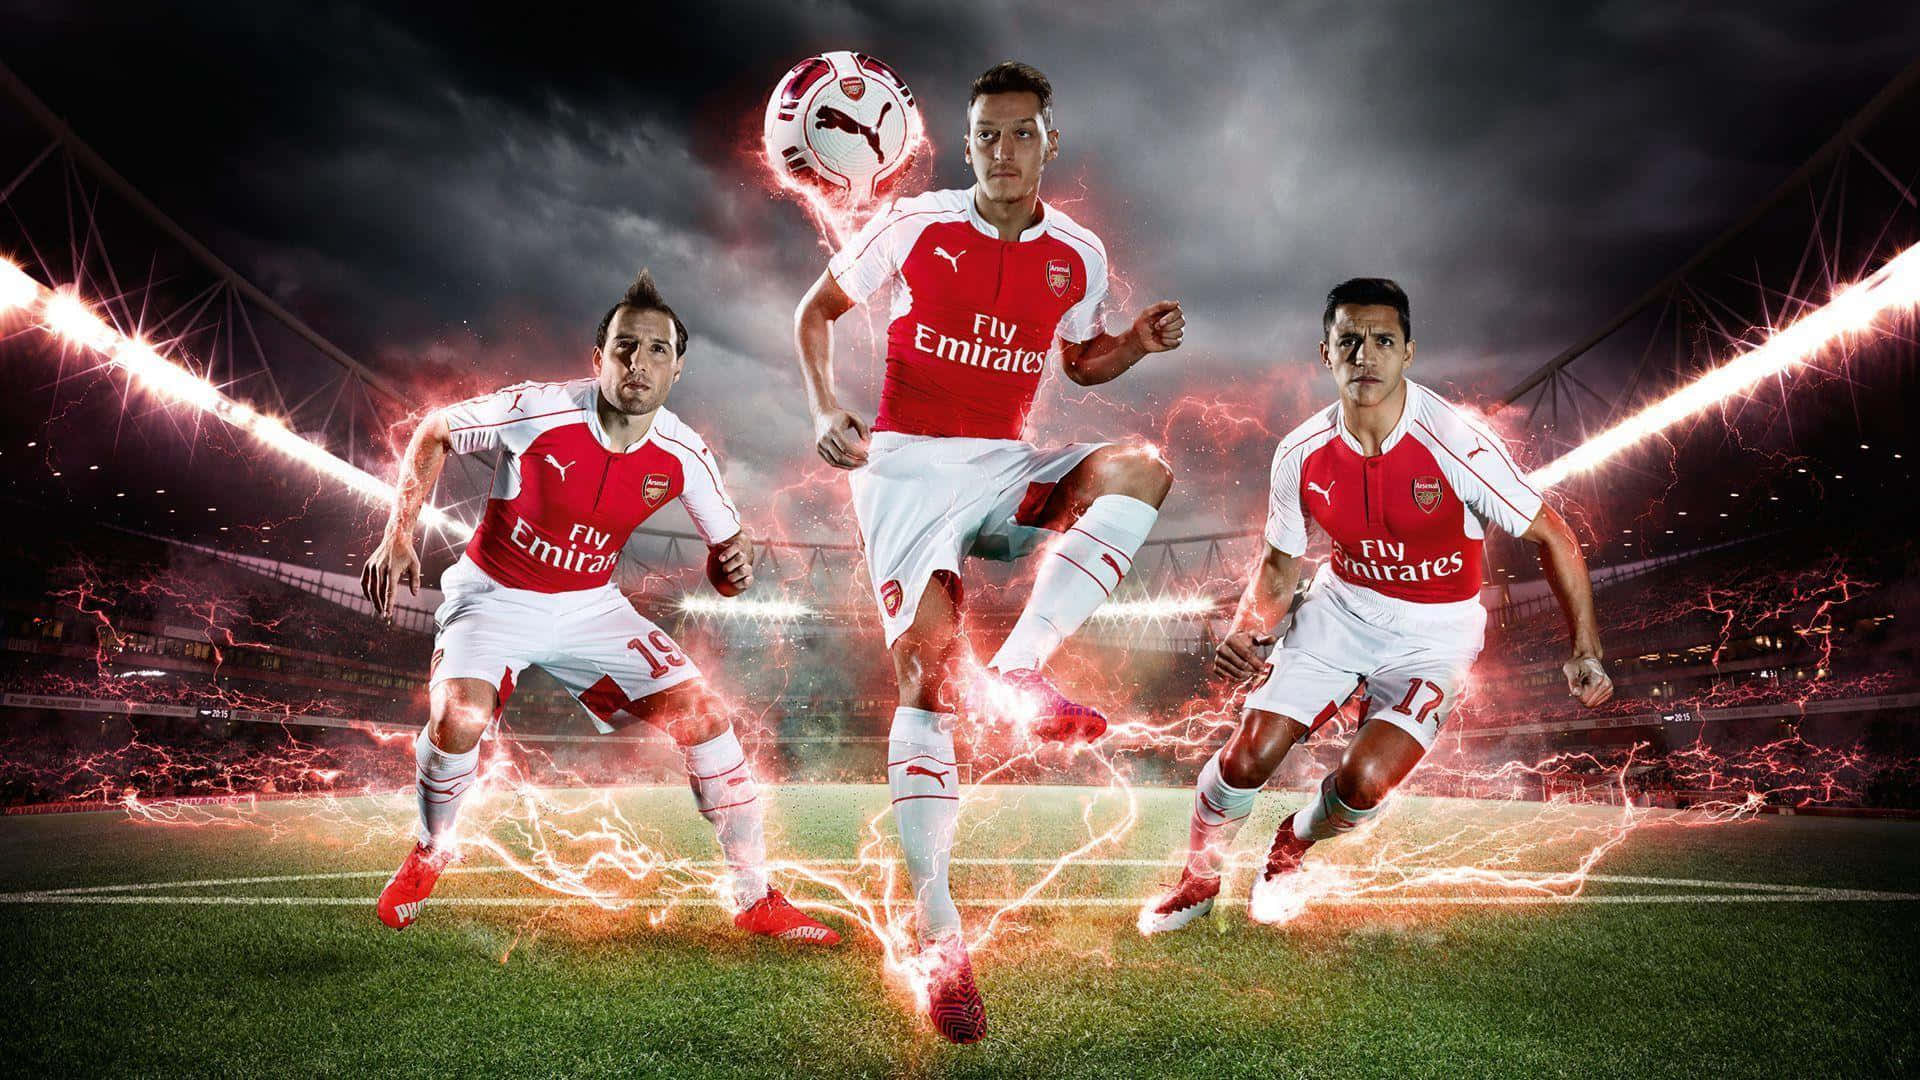 Arsenalbakgrund